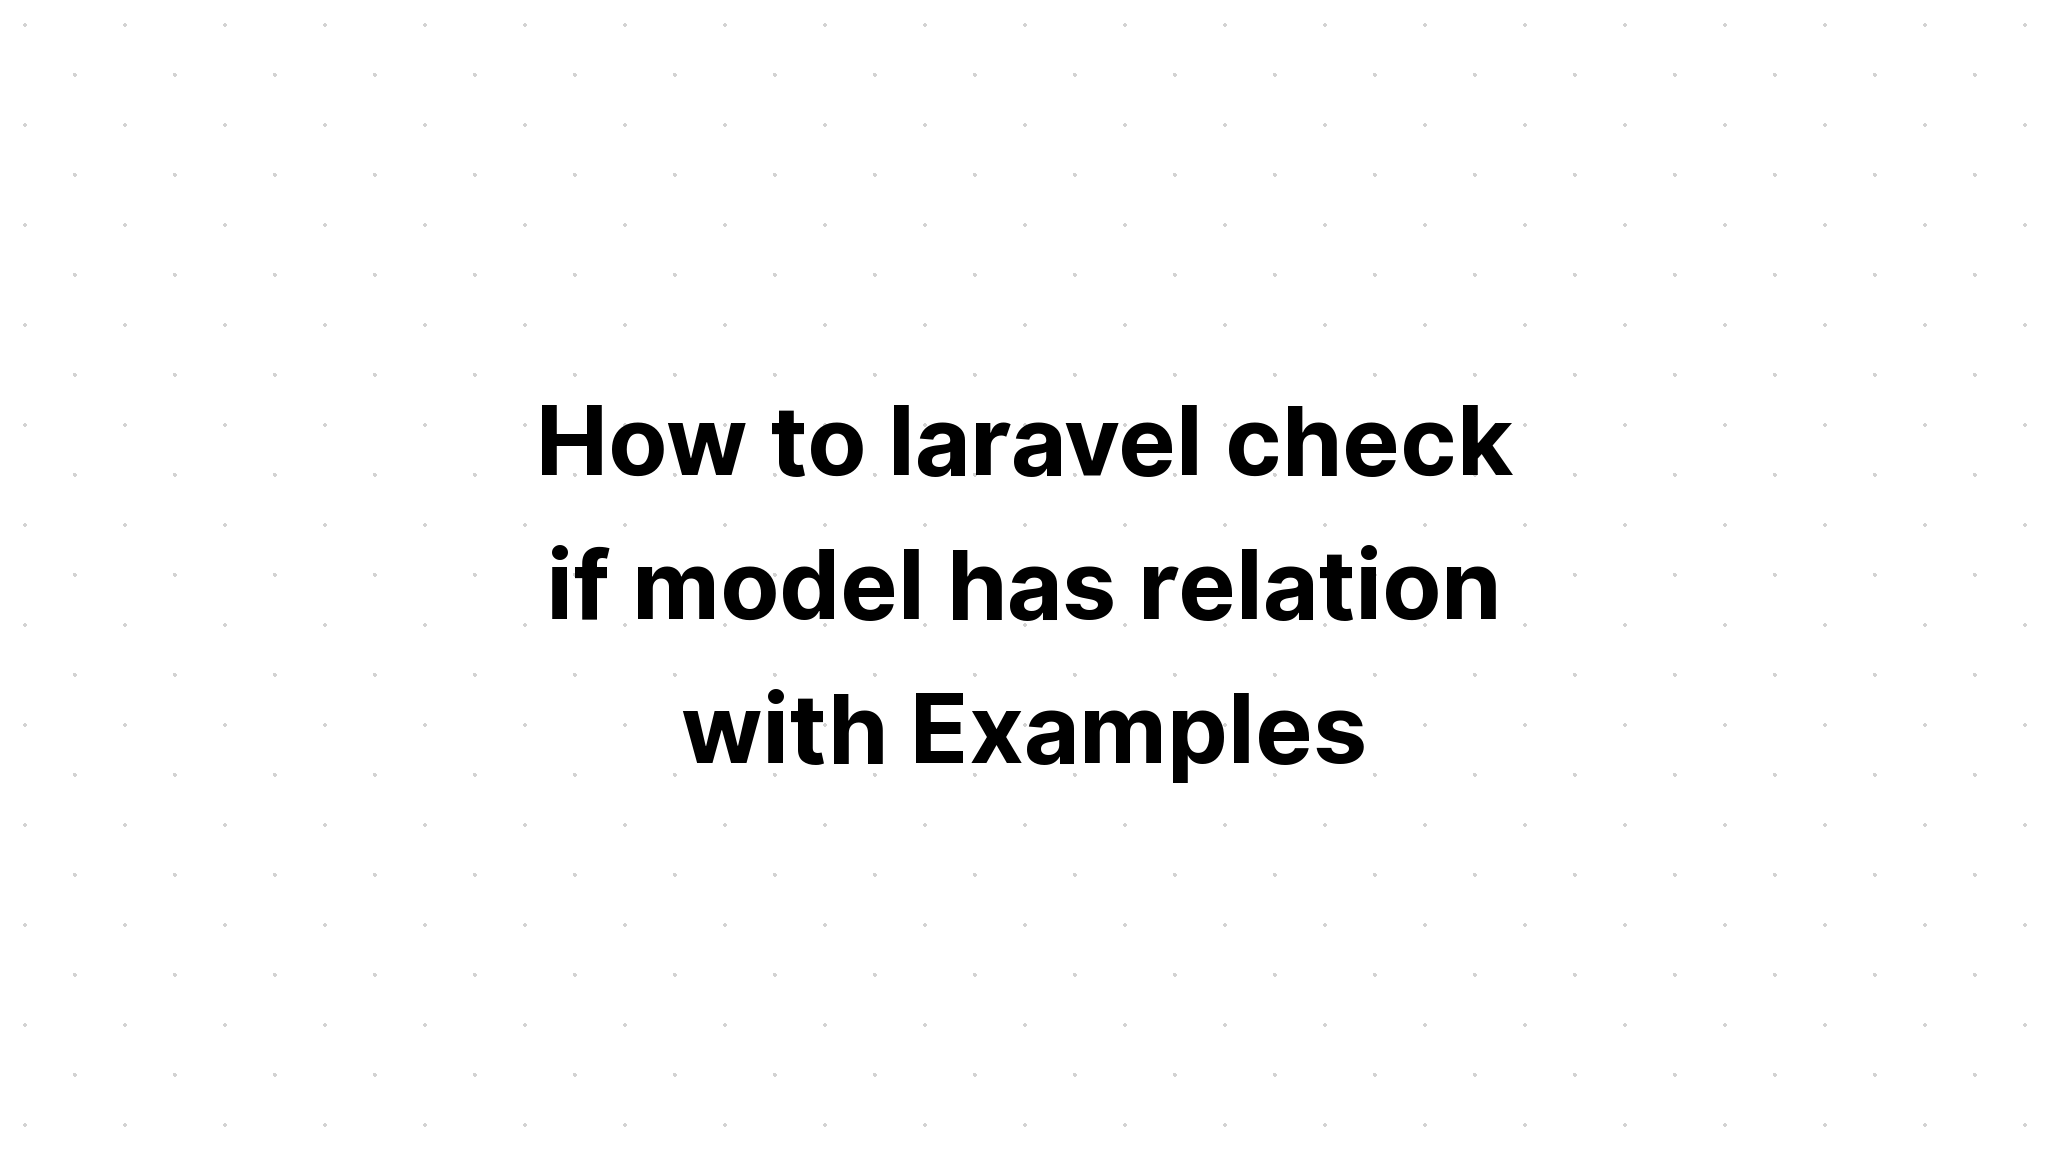 Cách laravel kiểm tra xem mô hình có quan hệ với Ví dụ